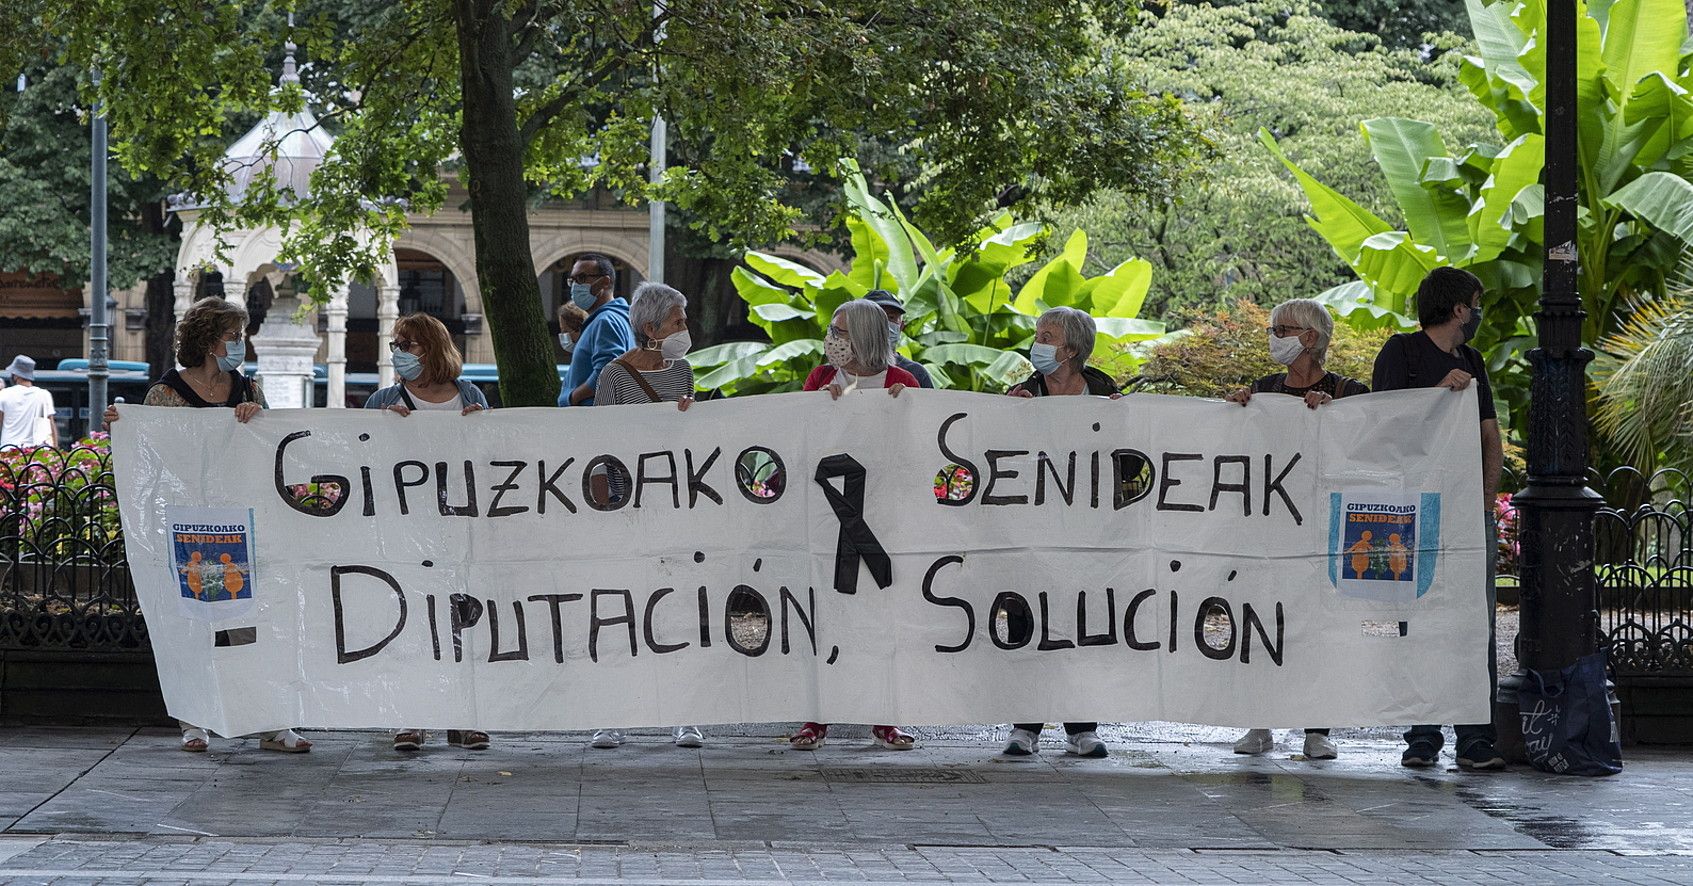 Gipuzkoako Senideak-ek atzo Donostian egindako protesta. JON URBE / FOKU.